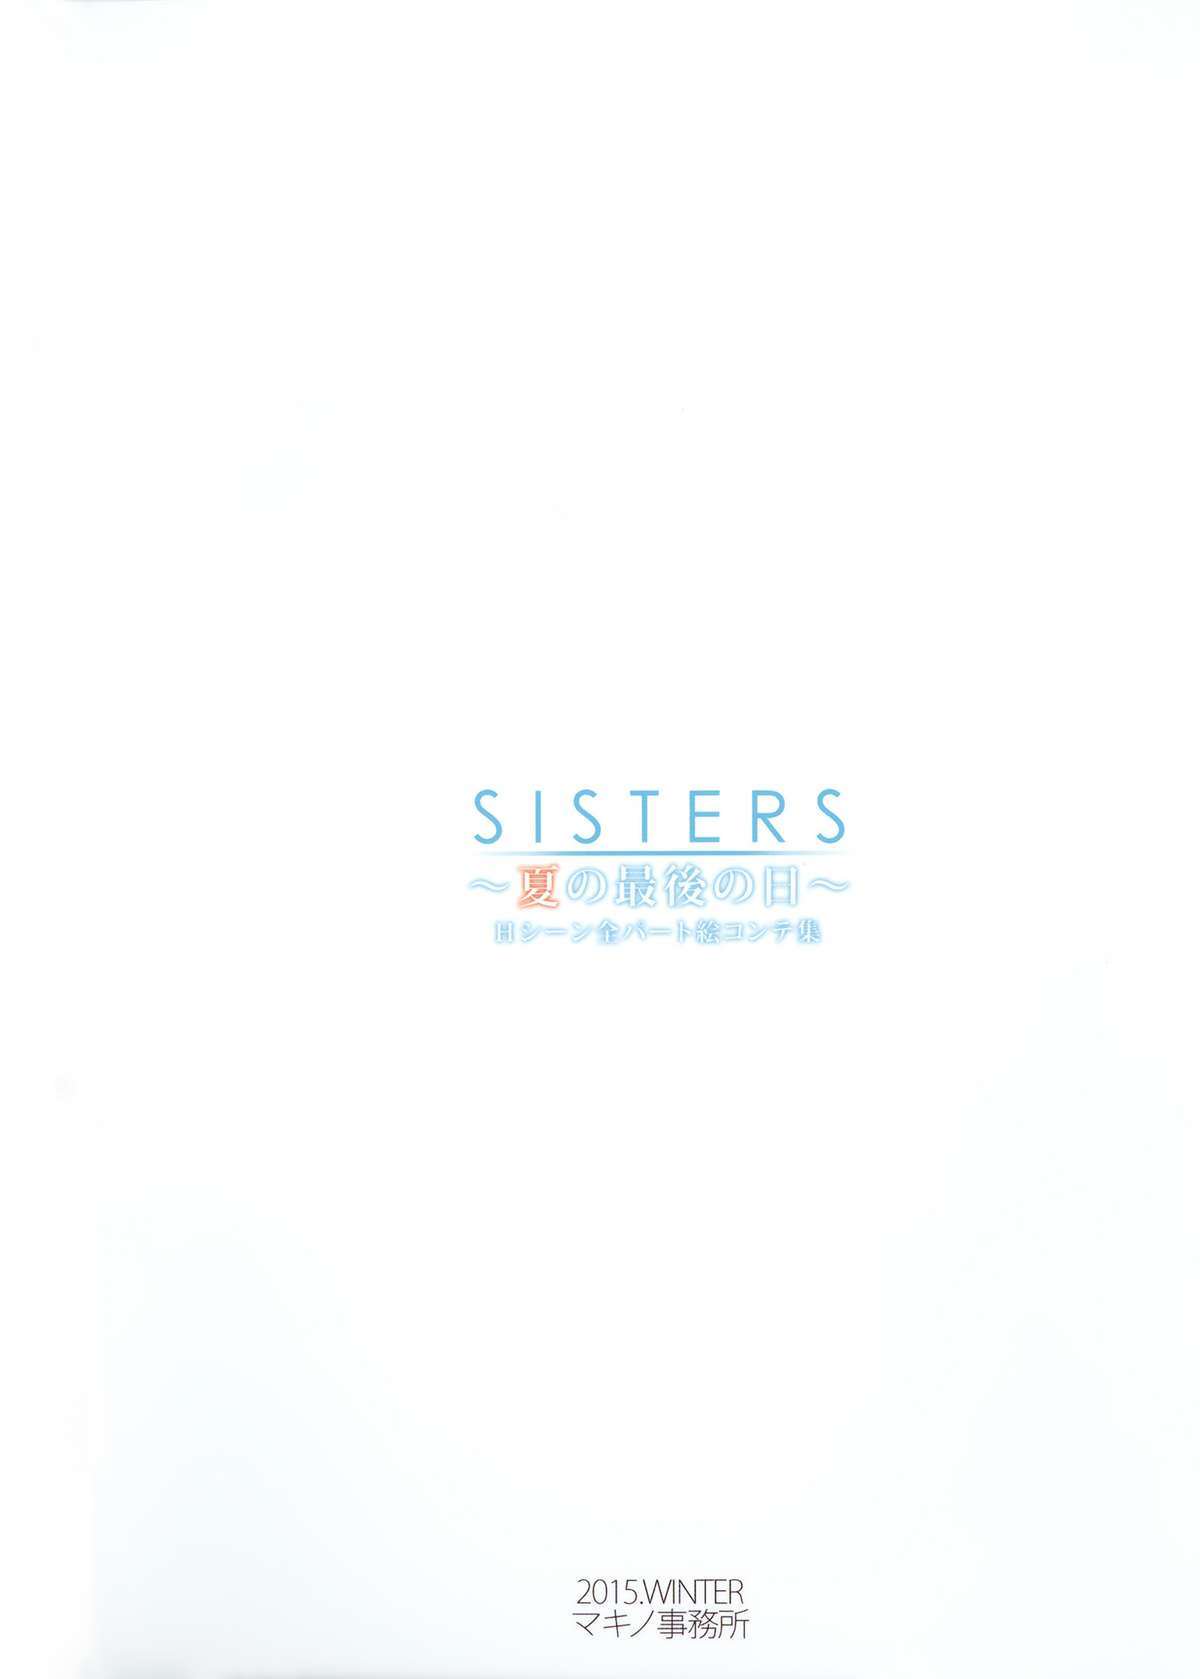 SISTERS-夏の西郷のHi-Hシーン全部絵コンテ